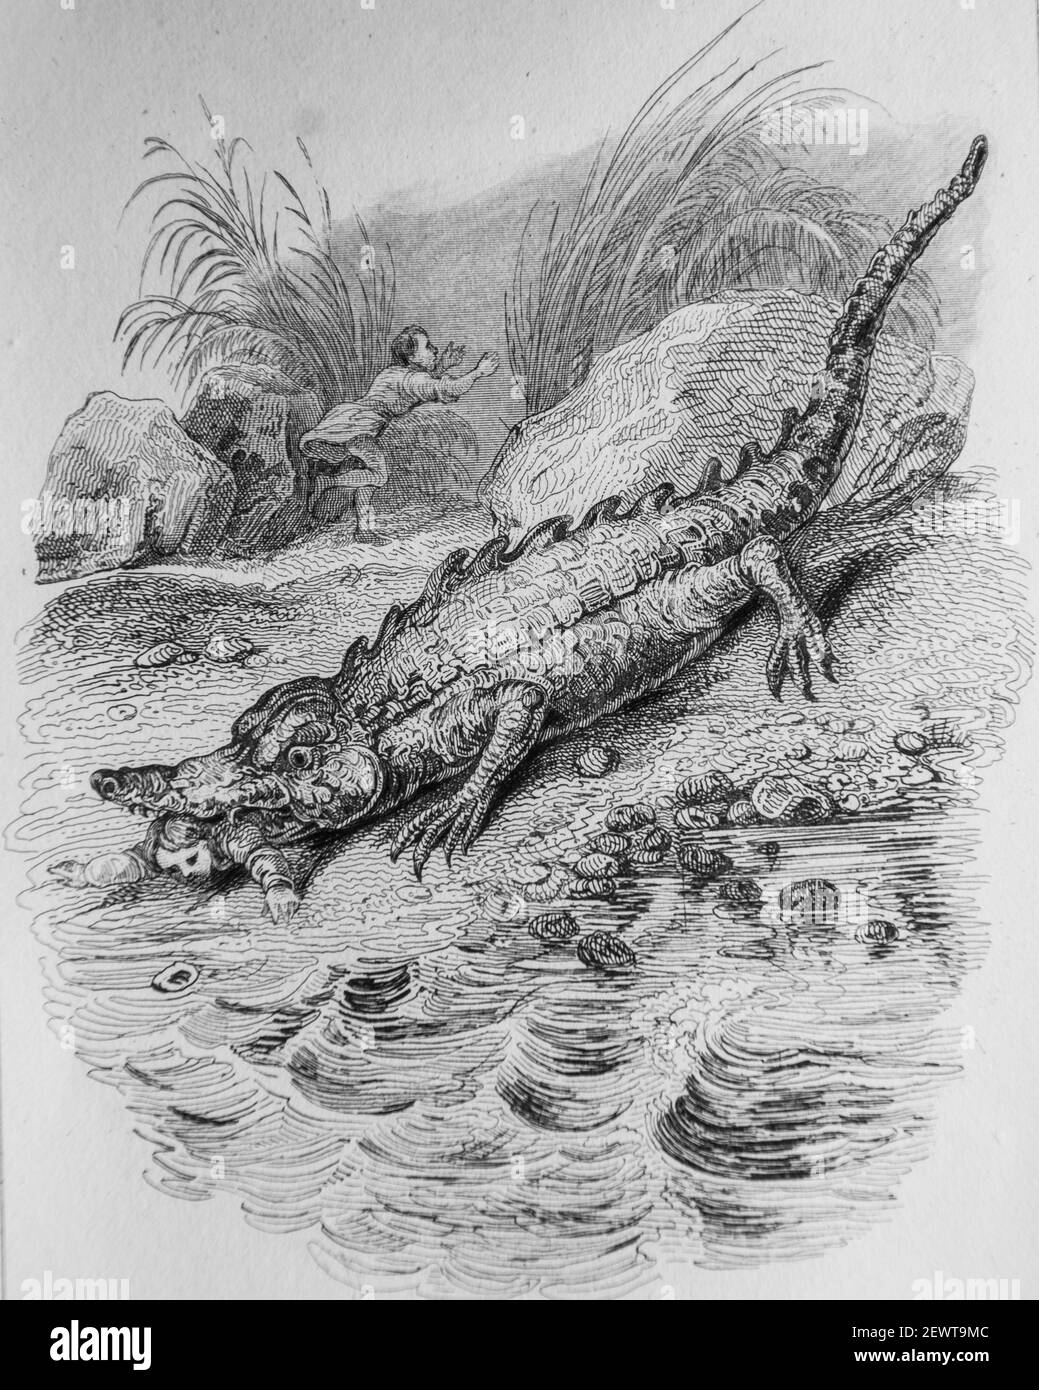 le crocodile et l'esturgeon, fables de florian illustrees par victor adam ,editeur delloye,desme 1838 Stock Photo